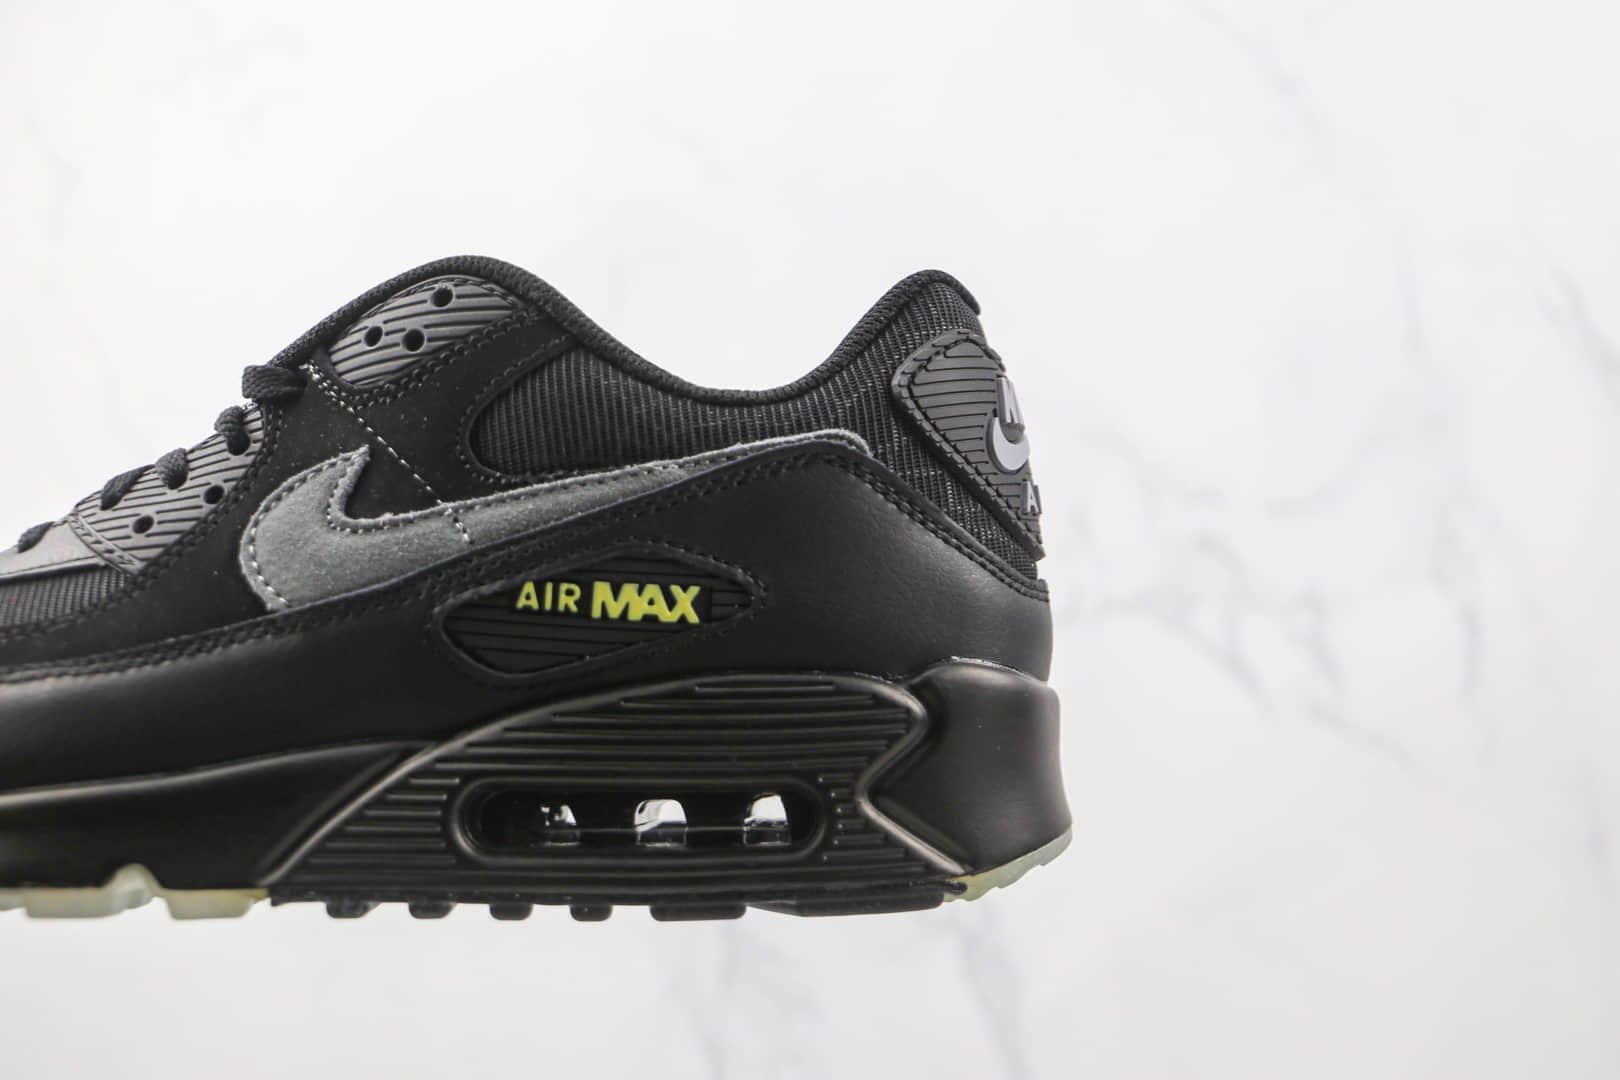 耐克Nike Air Max 90黑武士蜘蛛网Max90气垫鞋 DC3892-001 - 耐克Max97黑武士, 耐克Max97蜘蛛网, Nike Air Max 90, Nike Air Max, Nike, Max90气垫鞋, DC3892-001